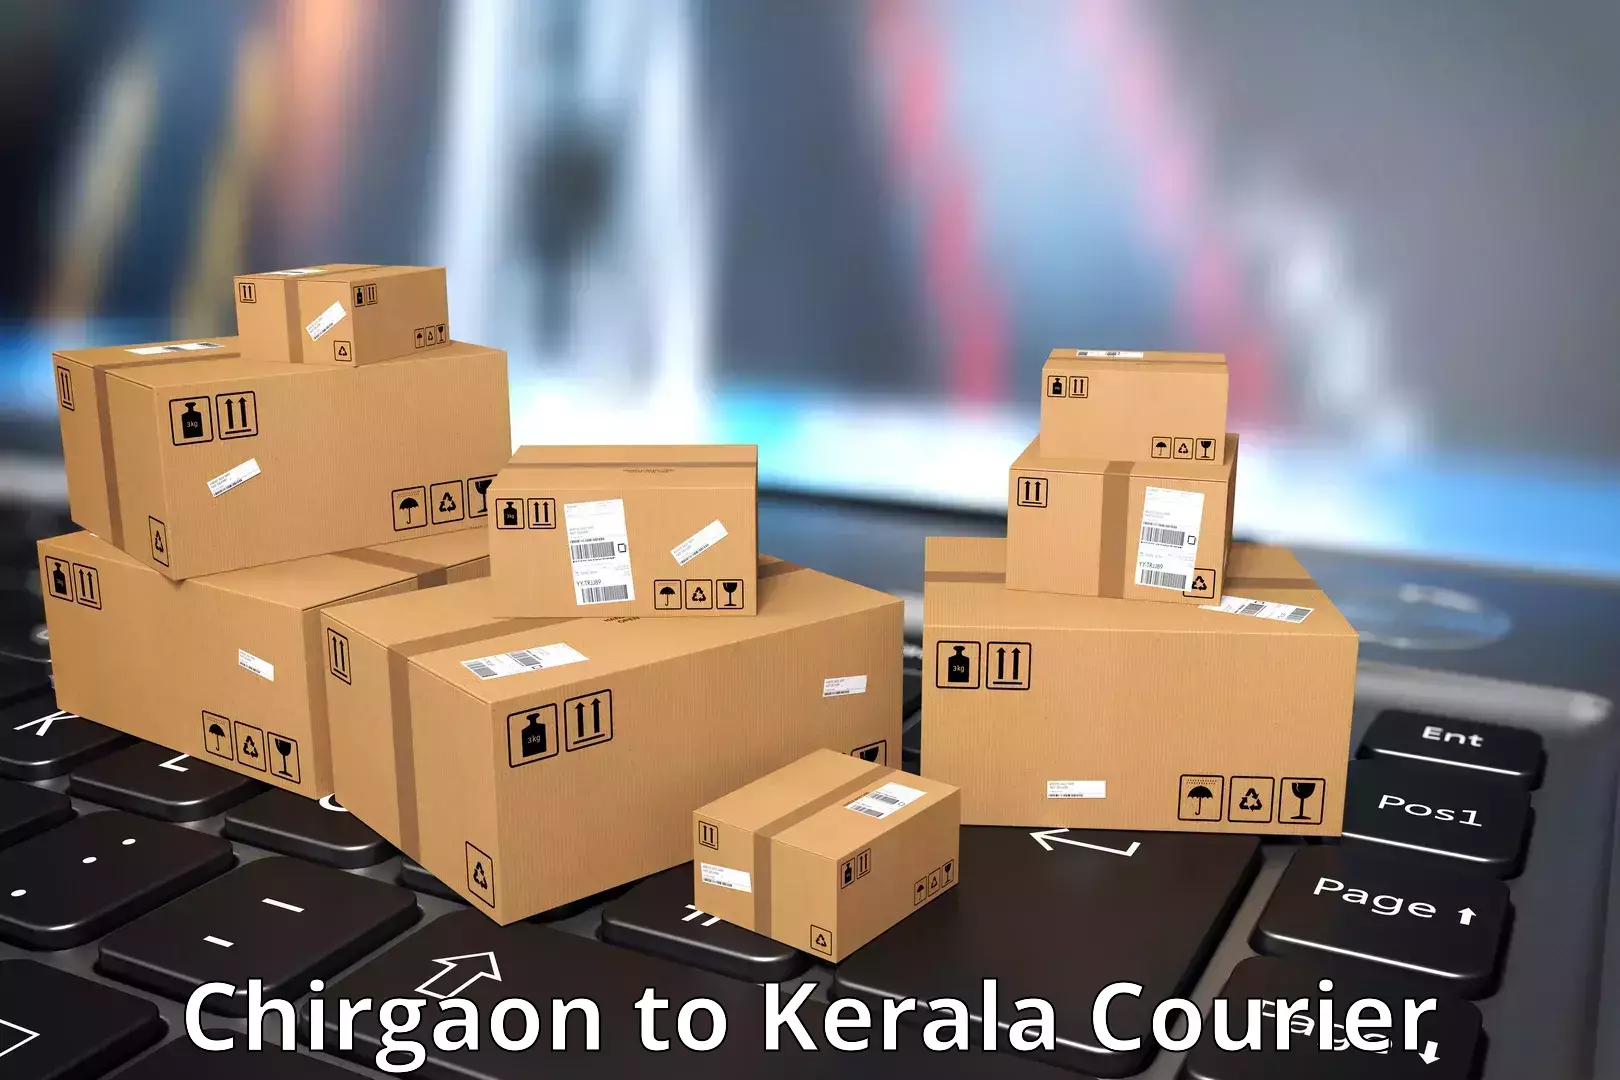 Business shipping needs Chirgaon to Chiramanangad